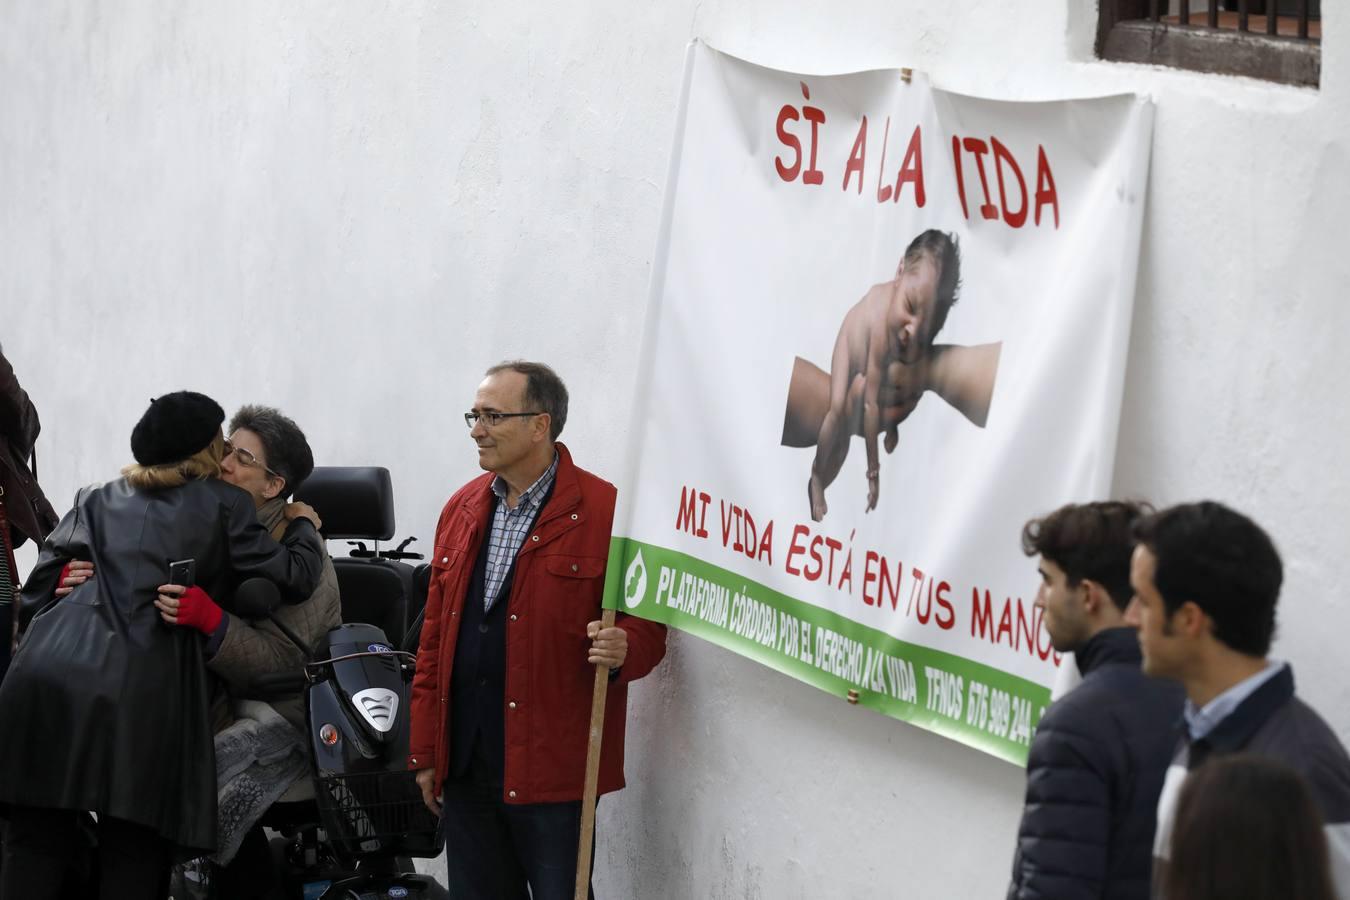 La concentración por la vida en Córdoba, en imágenes